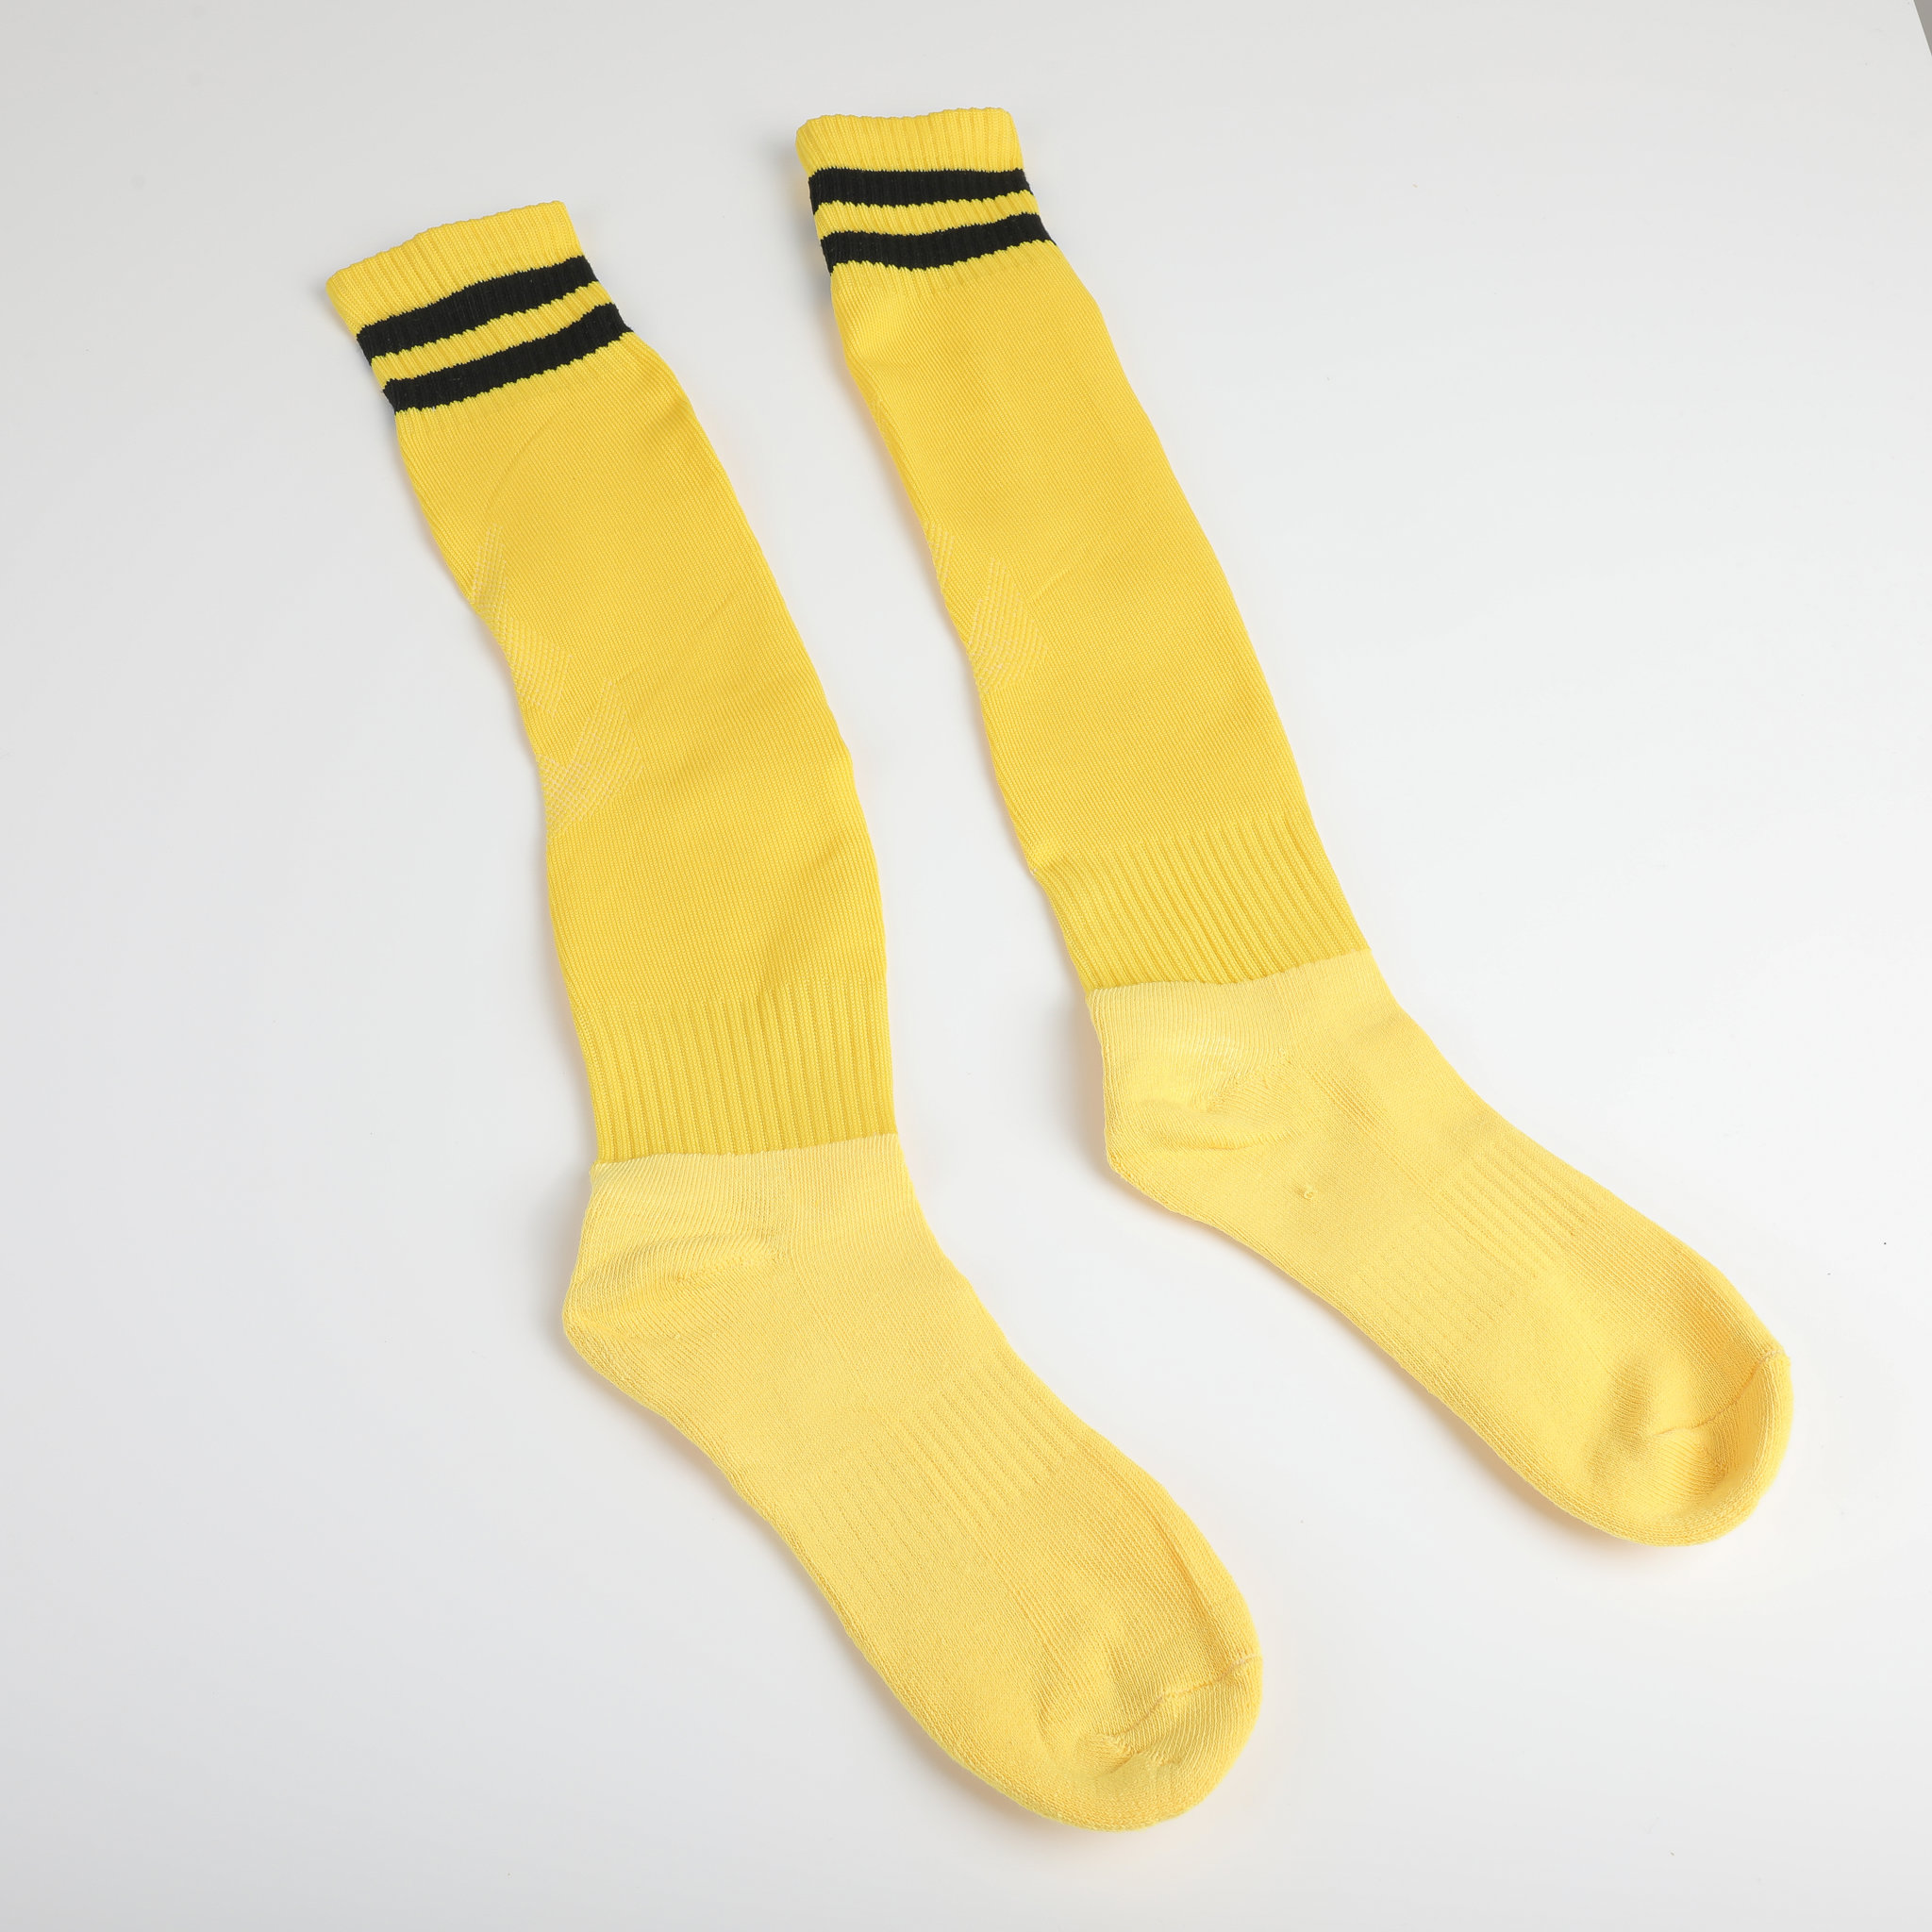 Colored Knee High Soccer Socks2